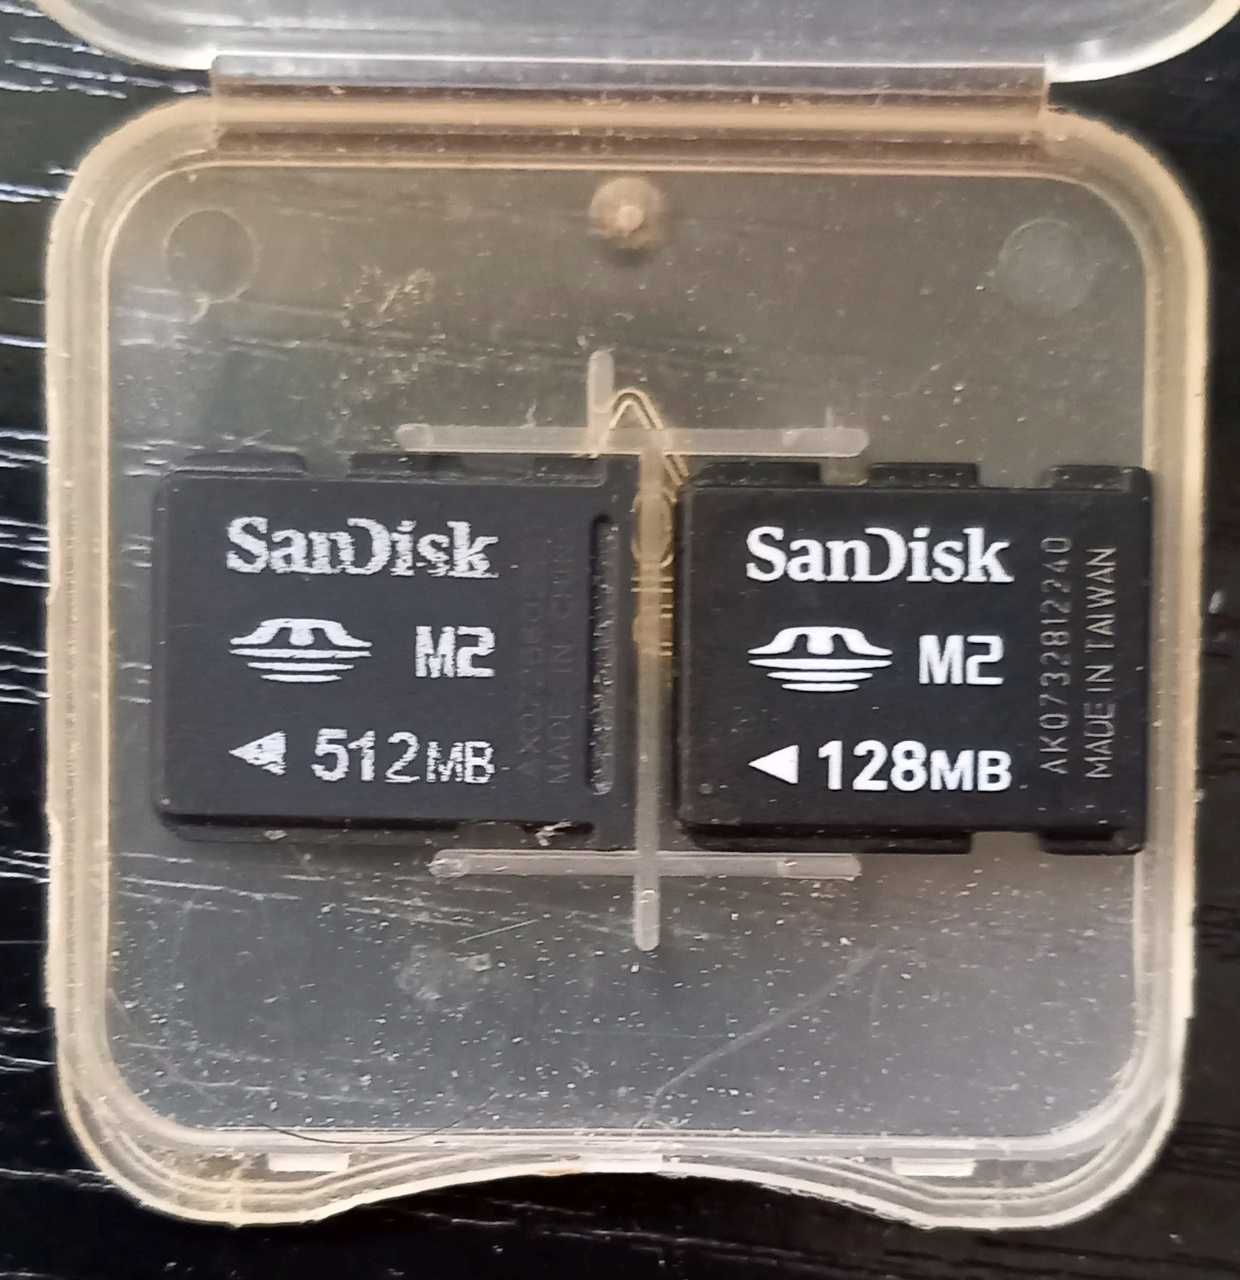 Carduri SD MiniSD MicroSD M2 SDHC Adaptor Micro-SD